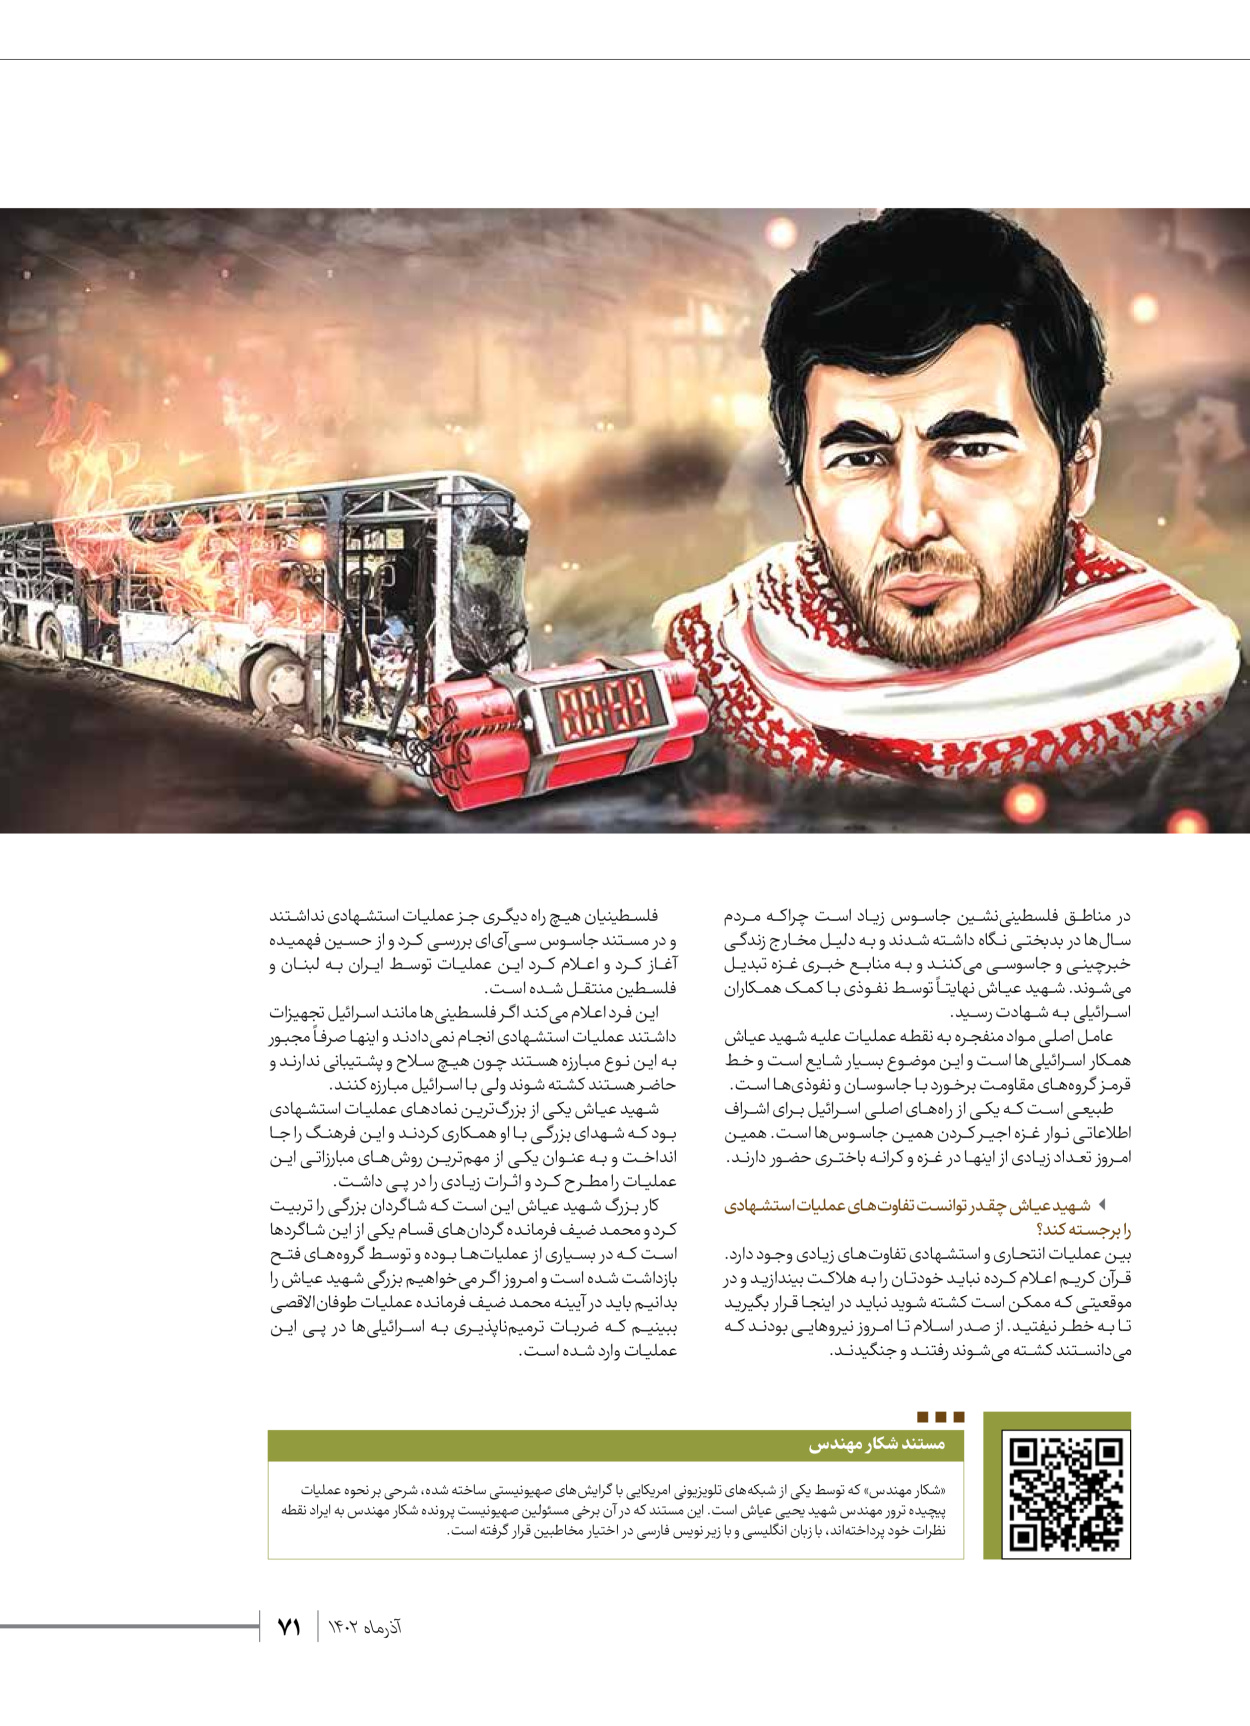 روزنامه ایران - ویژه نامه شهدای حماس - ۲۱ آذر ۱۴۰۲ - صفحه ۷۱